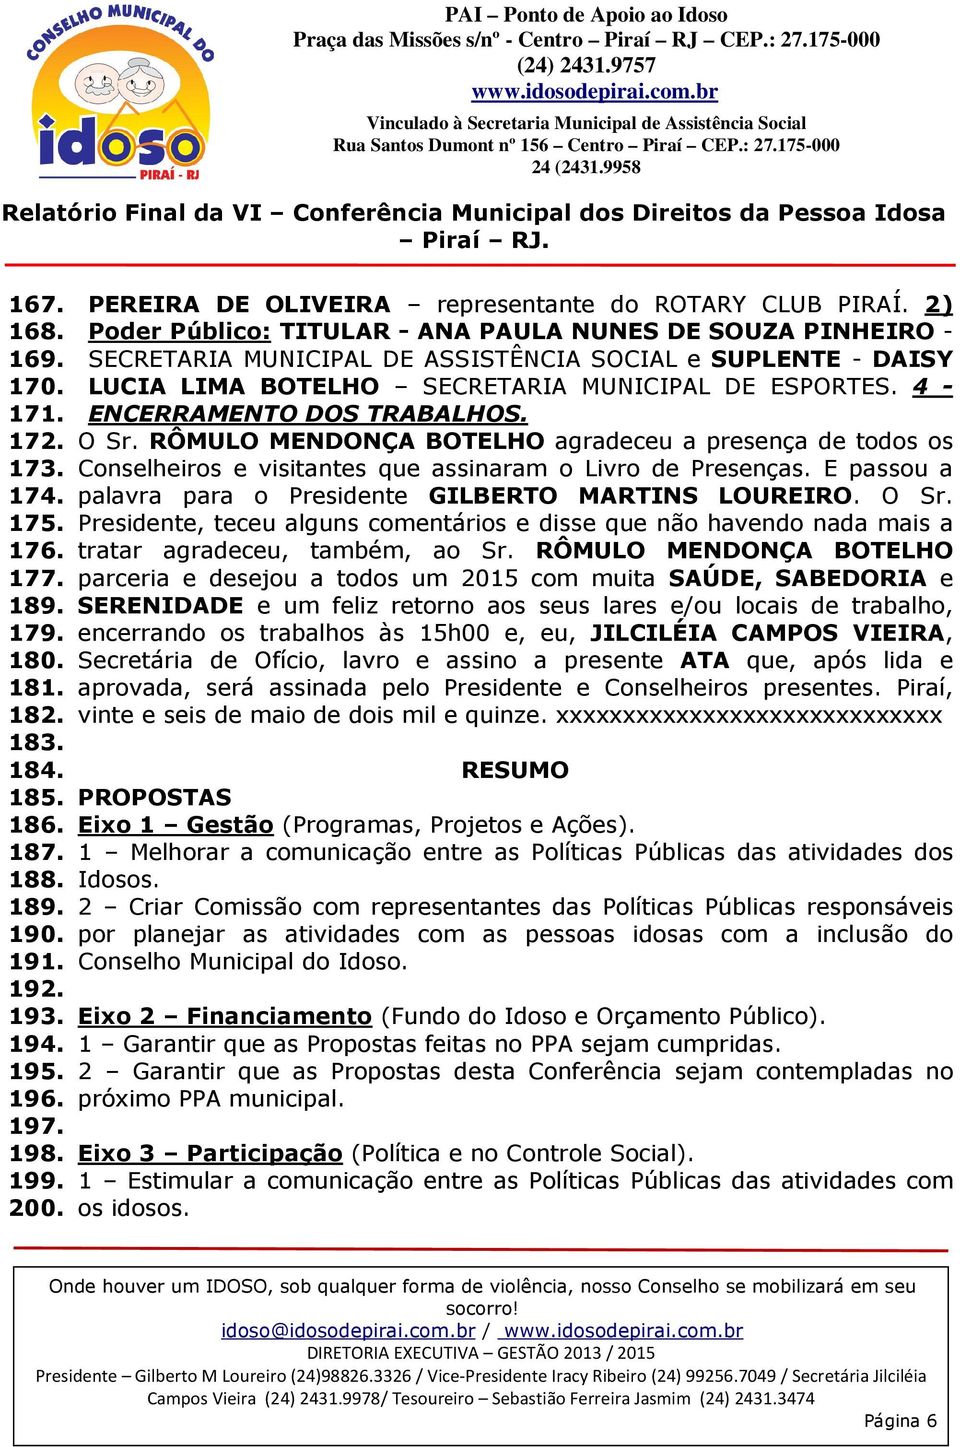 2) Poder Público: TITULAR - ANA PAULA NUNES DE SOUZA PINHEIRO - SECRETARIA MUNICIPAL DE ASSISTÊNCIA SOCIAL e SUPLENTE - DAISY LUCIA LIMA BOTELHO SECRETARIA MUNICIPAL DE ESPORTES.